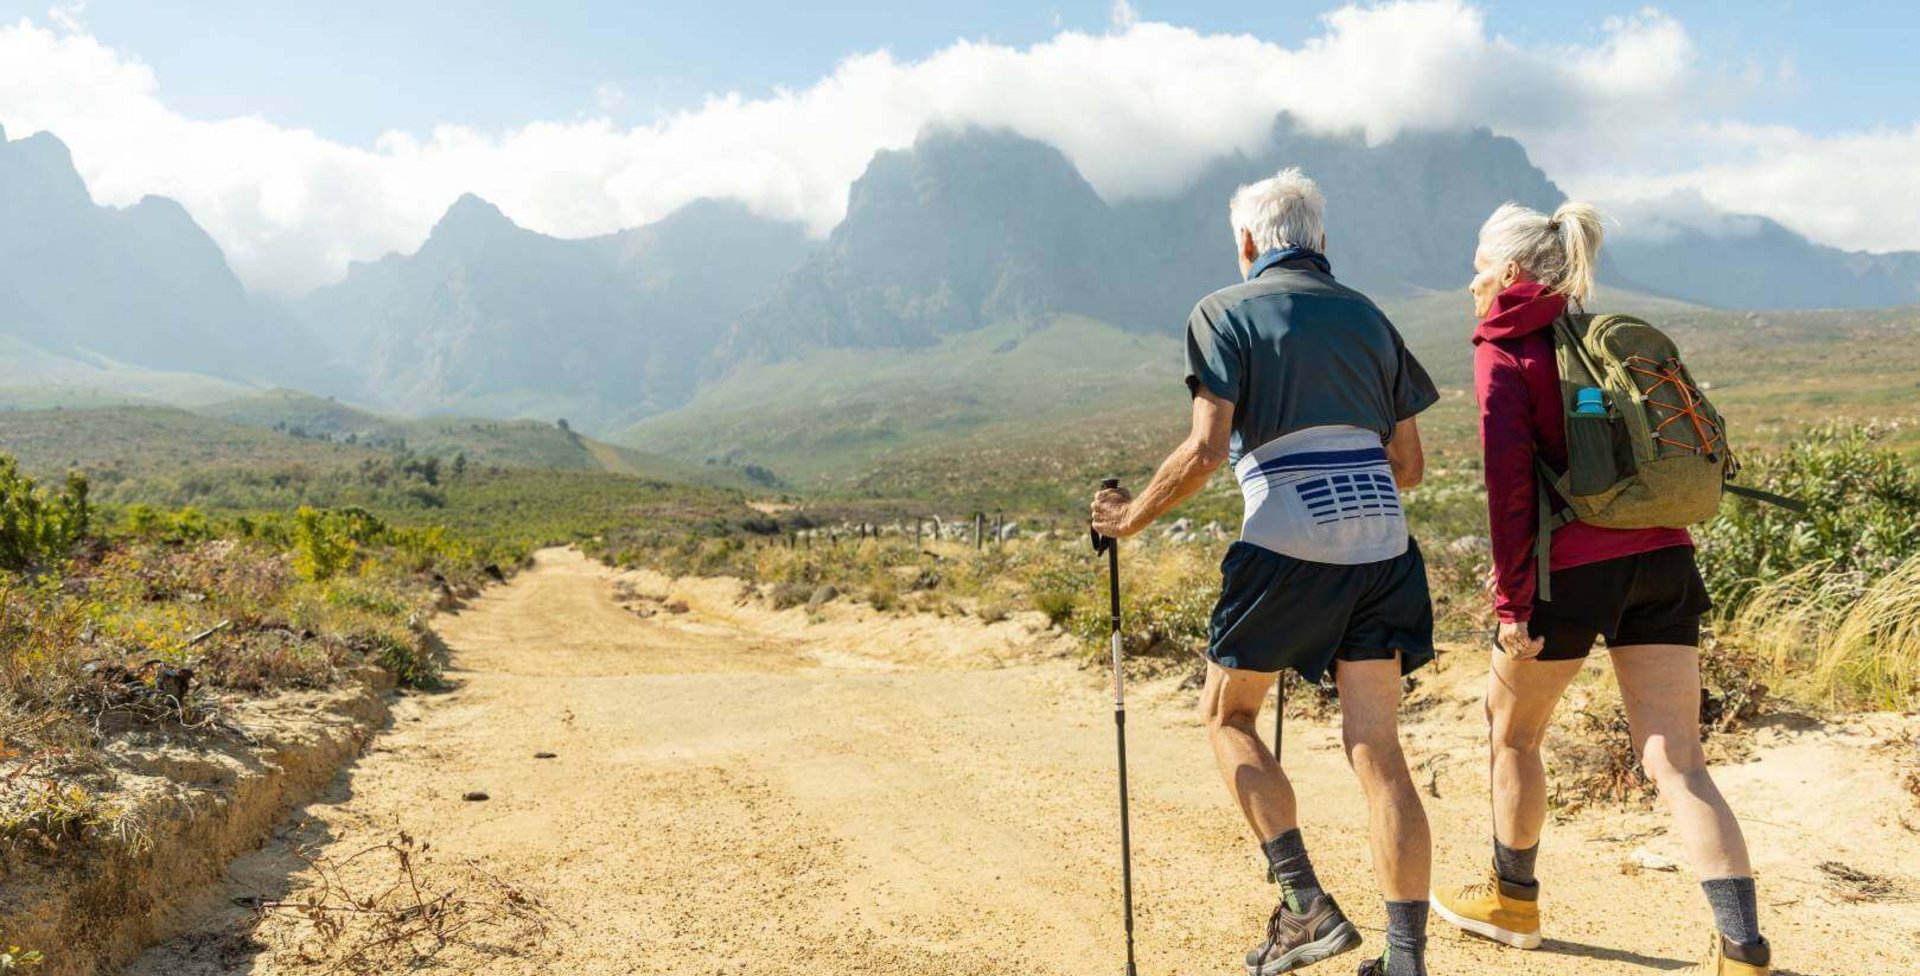 Abgebildet ist ein älteres Paar, das in einer sommerlichen Berglandschaft wandert. Zur Unterstützung nutzt der Mann Wanderstöcke und trägt eine Bauerfeind LumboLoc Rückenbandage.